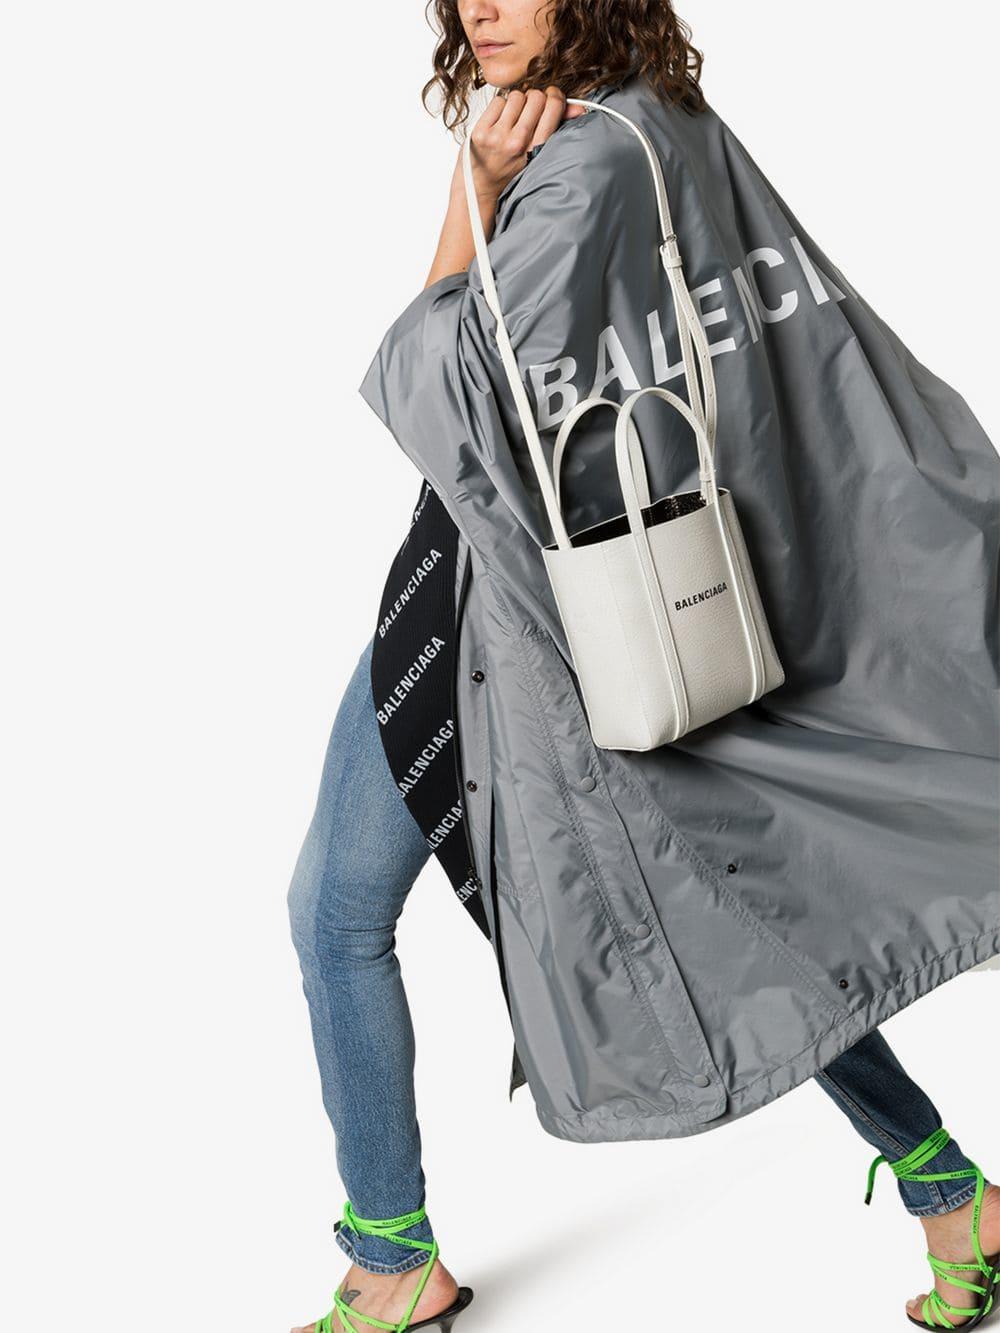 Balenciaga Everyday Xxs Leather Tote Bag in White | Lyst